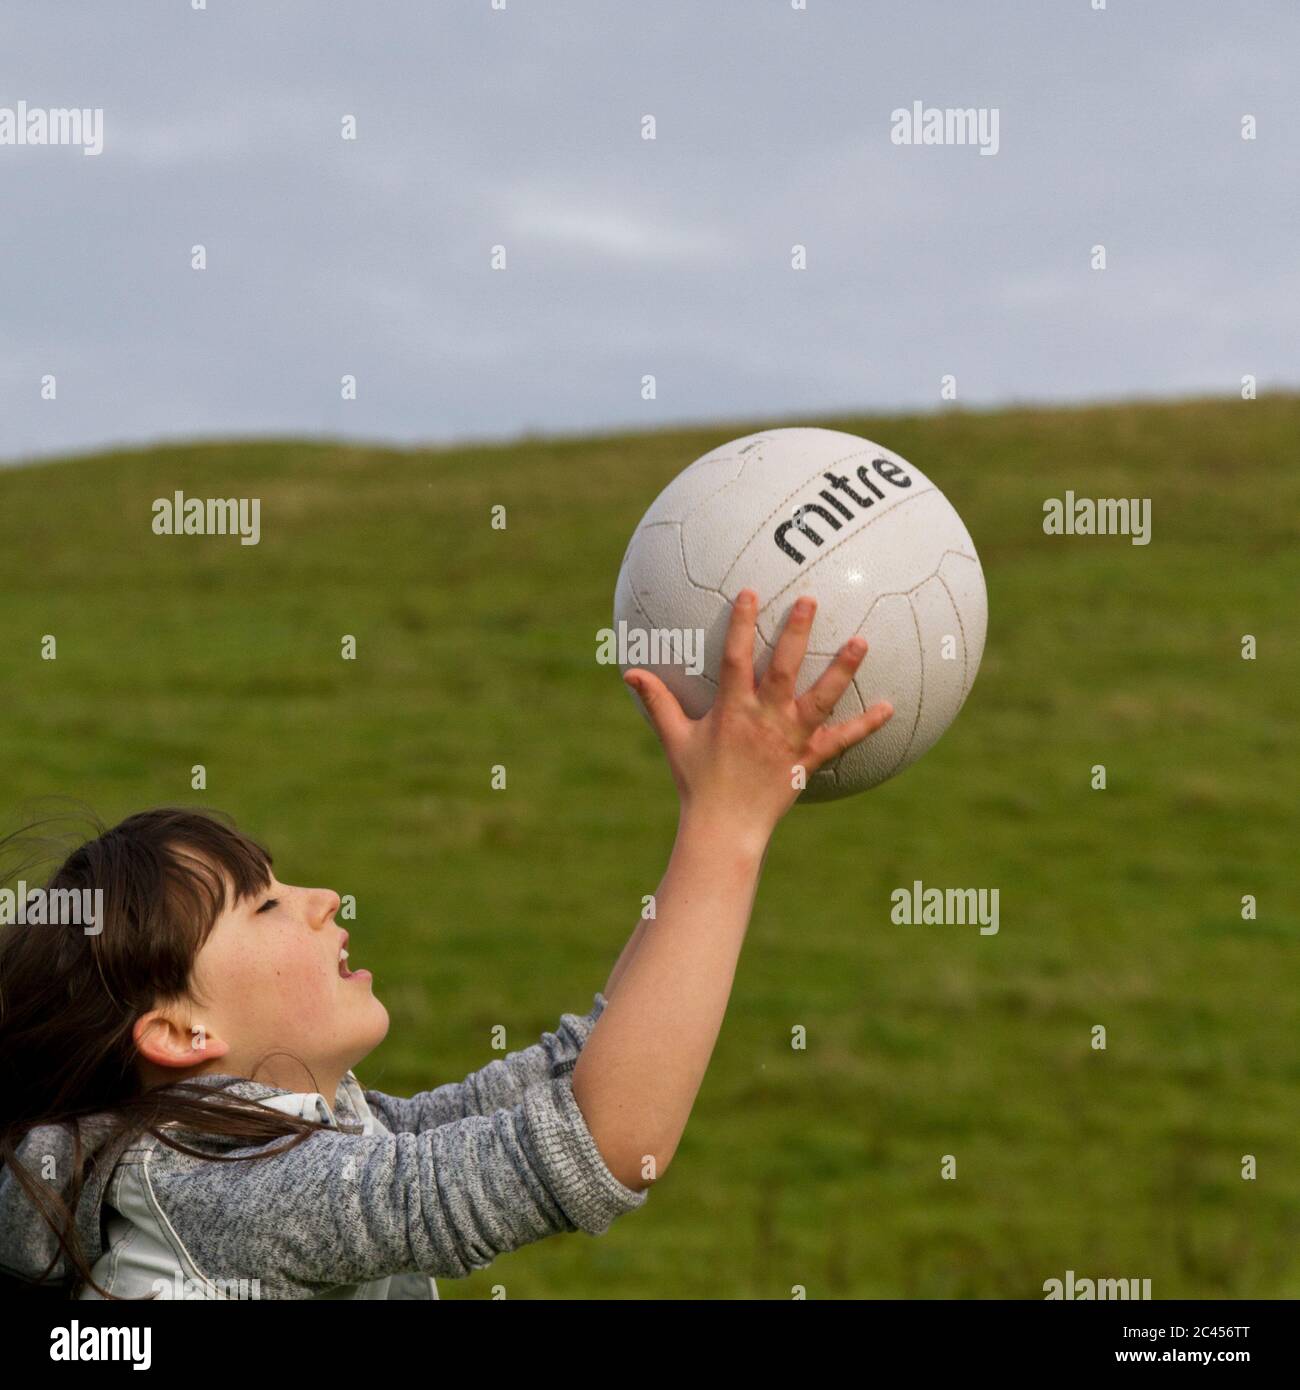 Jeune fille attrapant une balle Banque D'Images